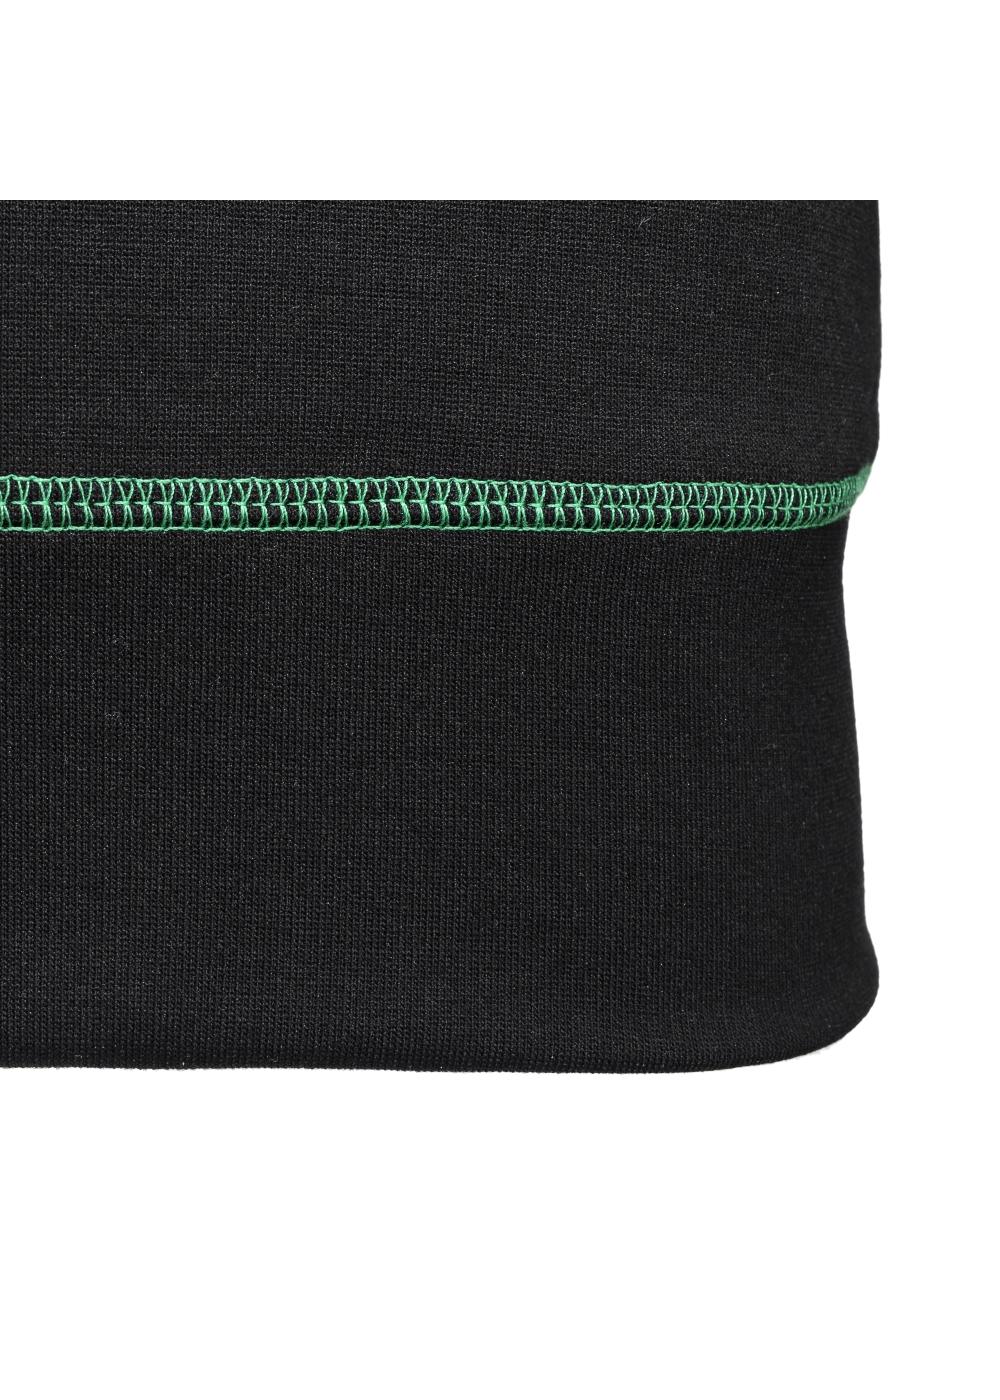 Bluza damska z zielonymi elementami BLZDT-0010-99(Z19)